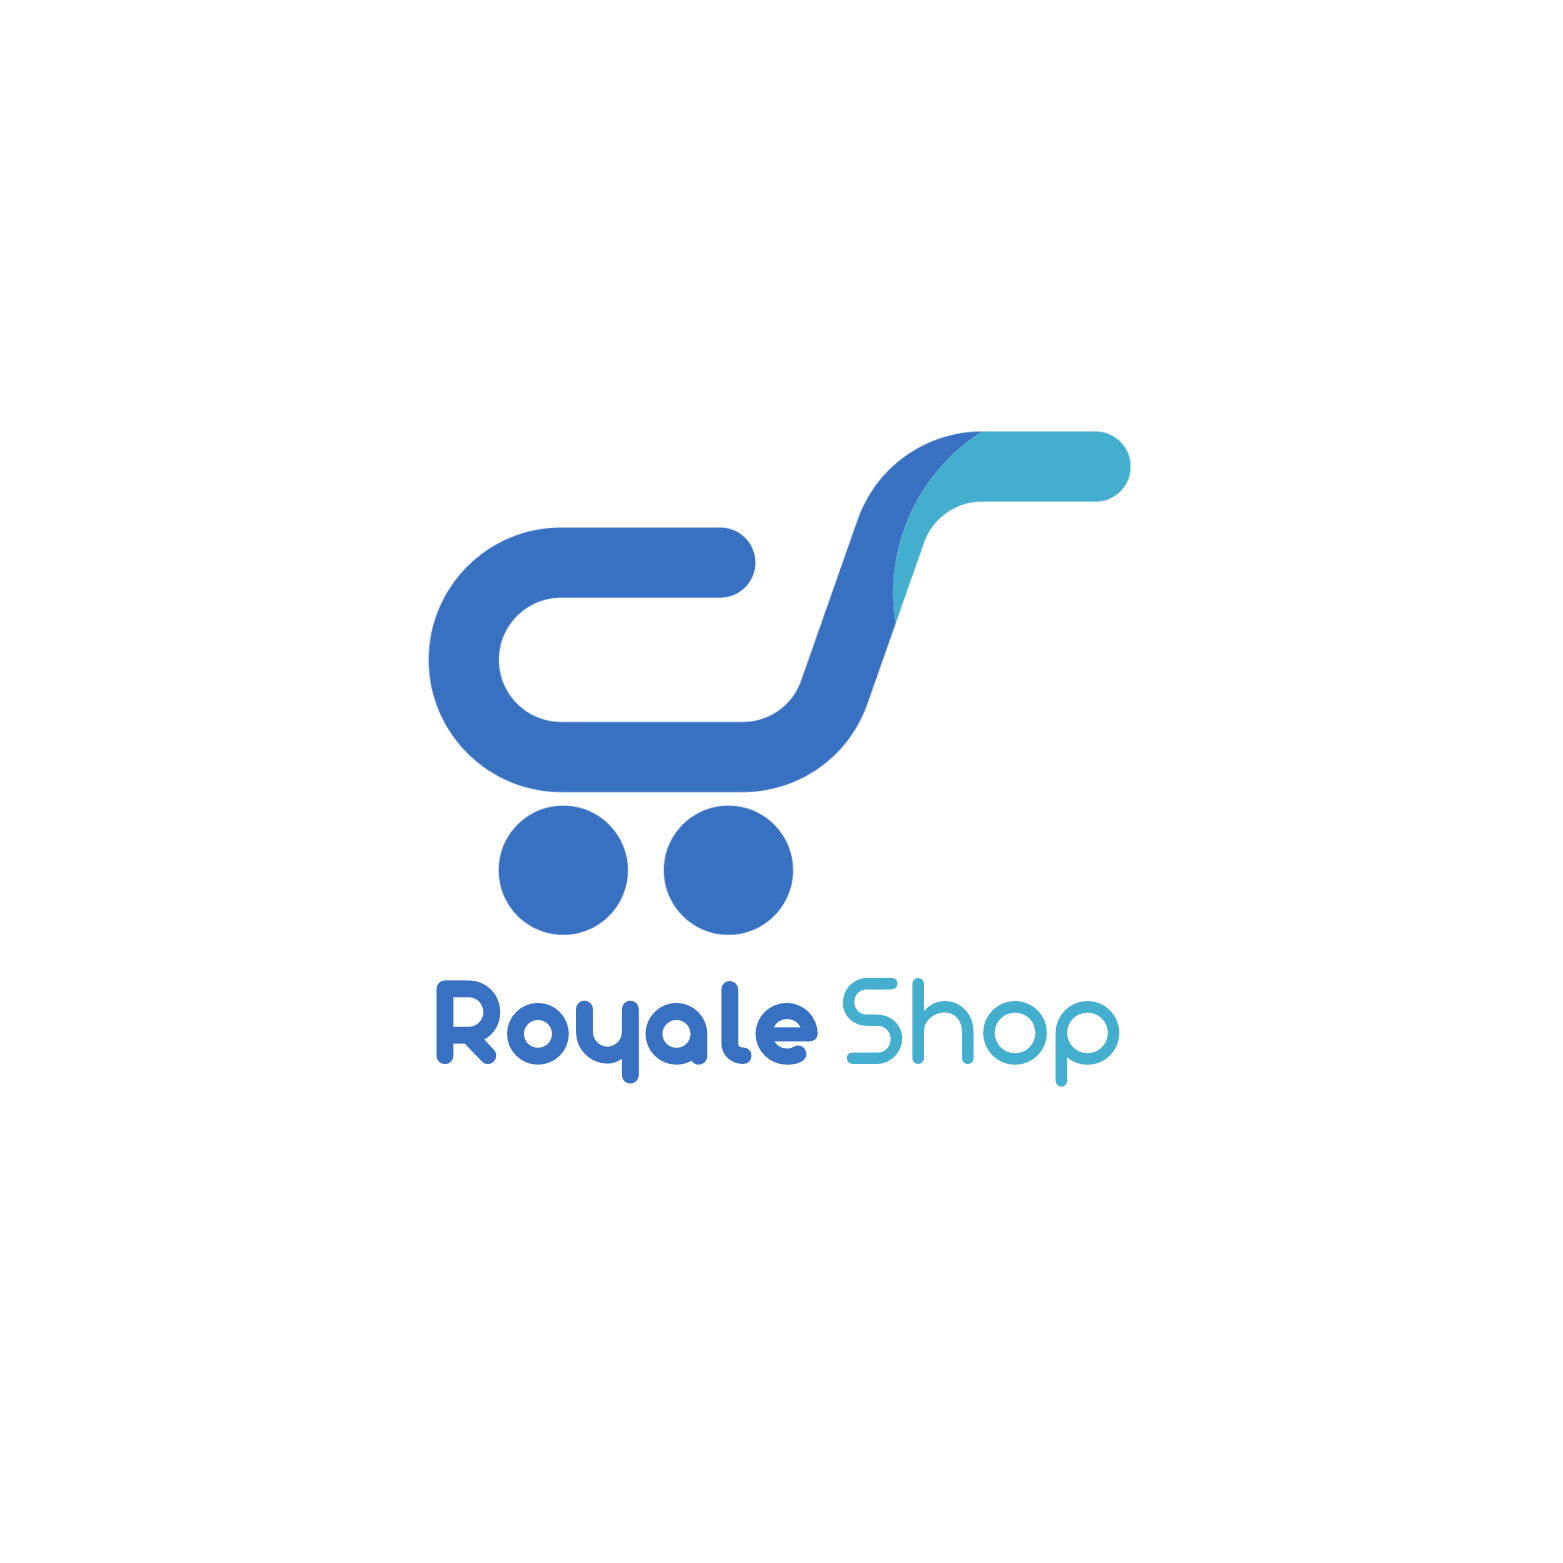 Royale Shop